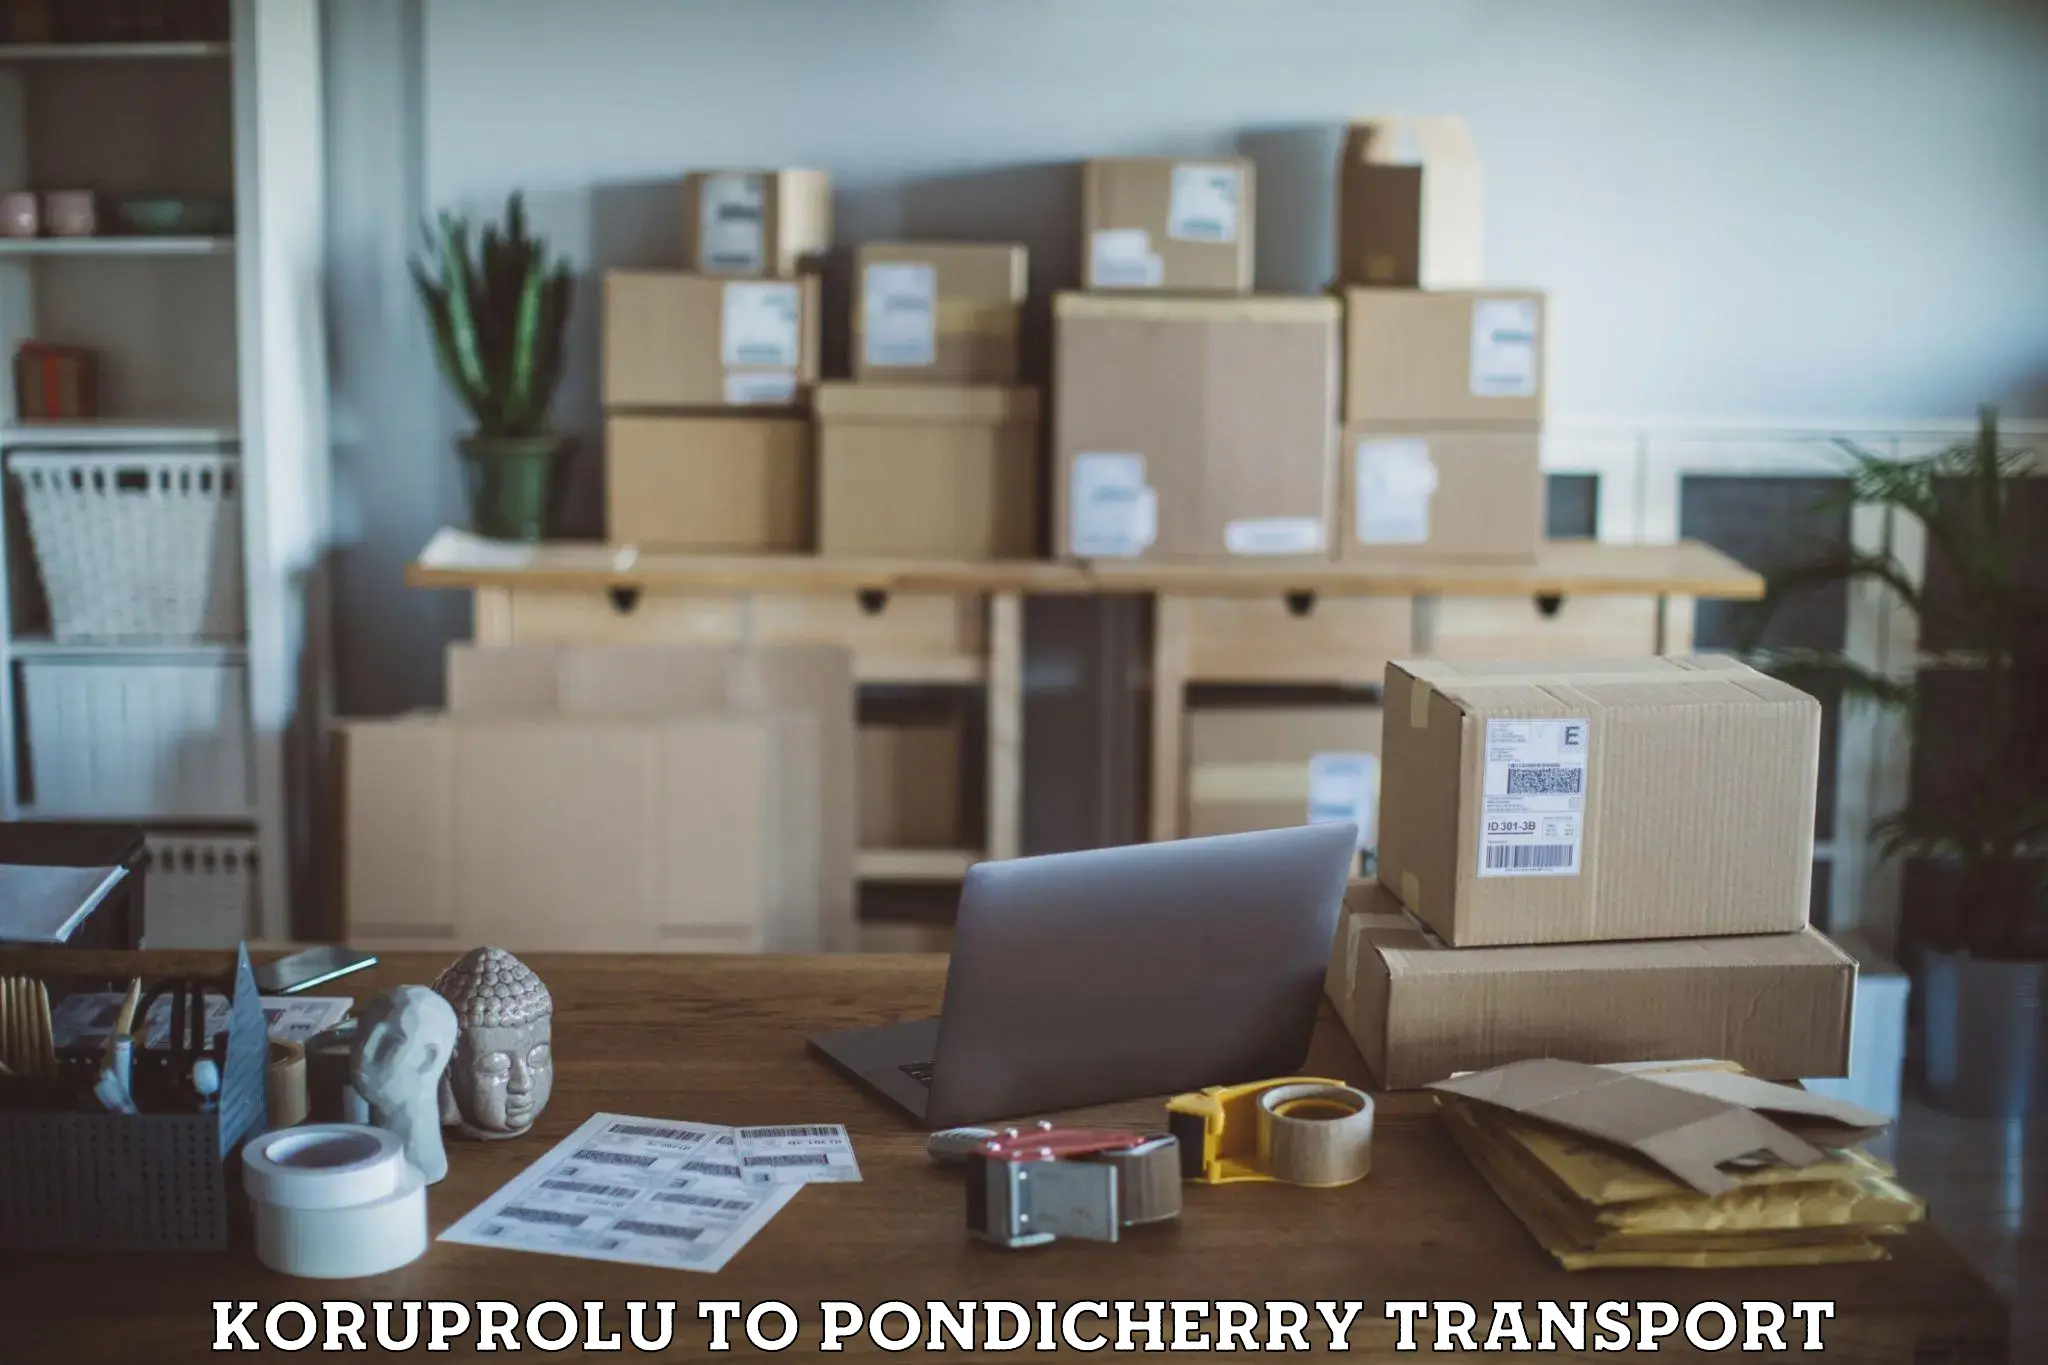 Lorry transport service Koruprolu to Pondicherry University